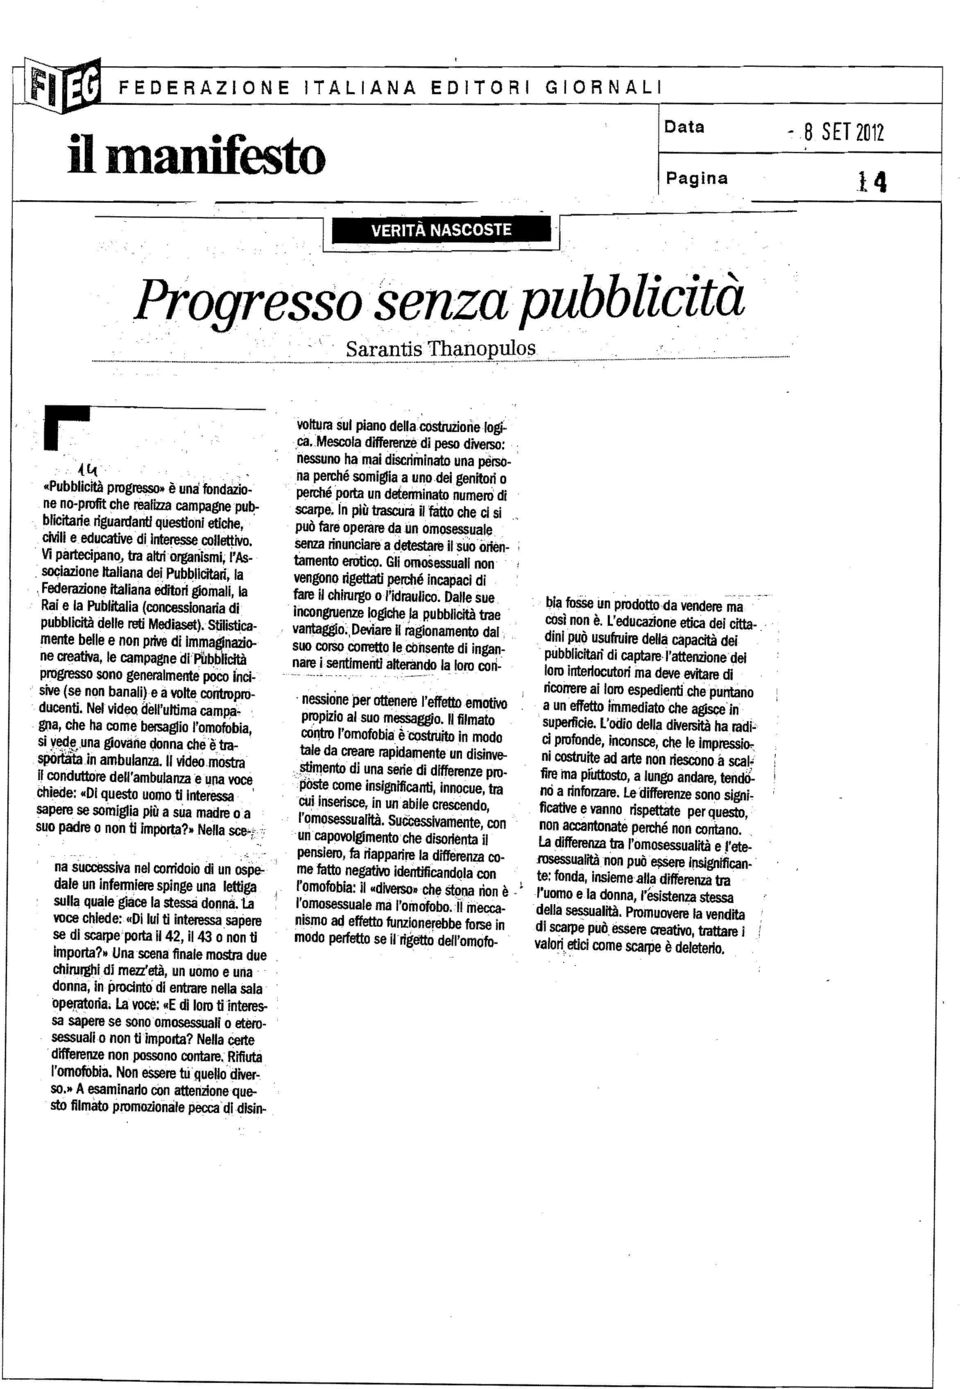 federazione italiana editori gromali, la Rai e la Publitalia (concessionaria di pubblicità delle reti Medii'lset).